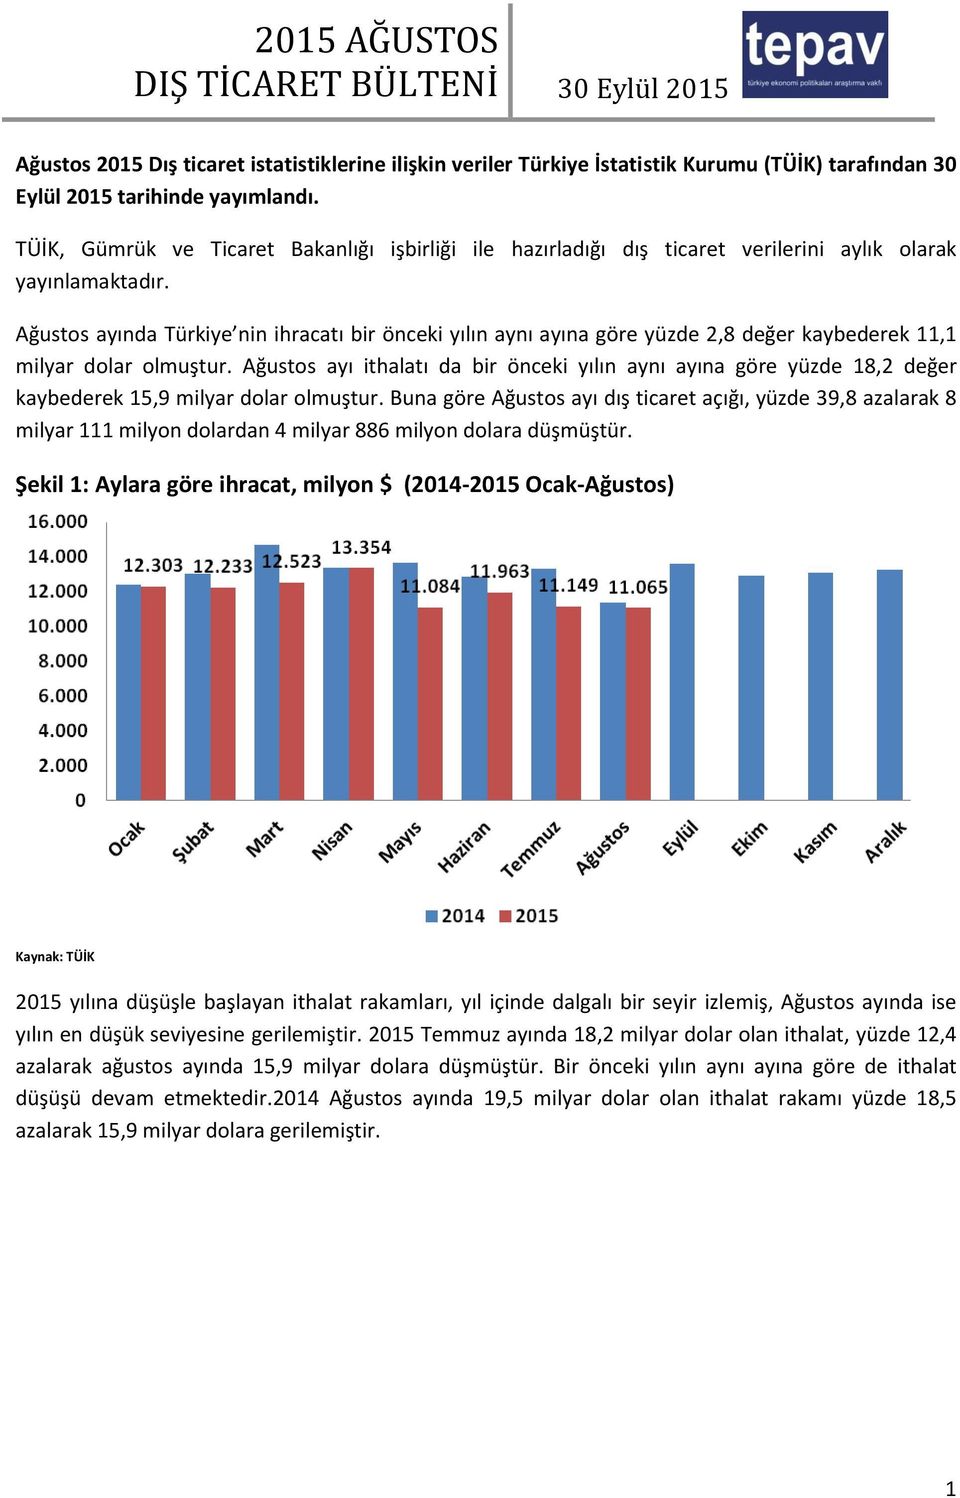 Ağustos ayında Türkiye nin ihracatı bir önceki yılın aynı ayına göre yüzde 2,8 değer kaybederek 11,1 milyar dolar olmuştur.